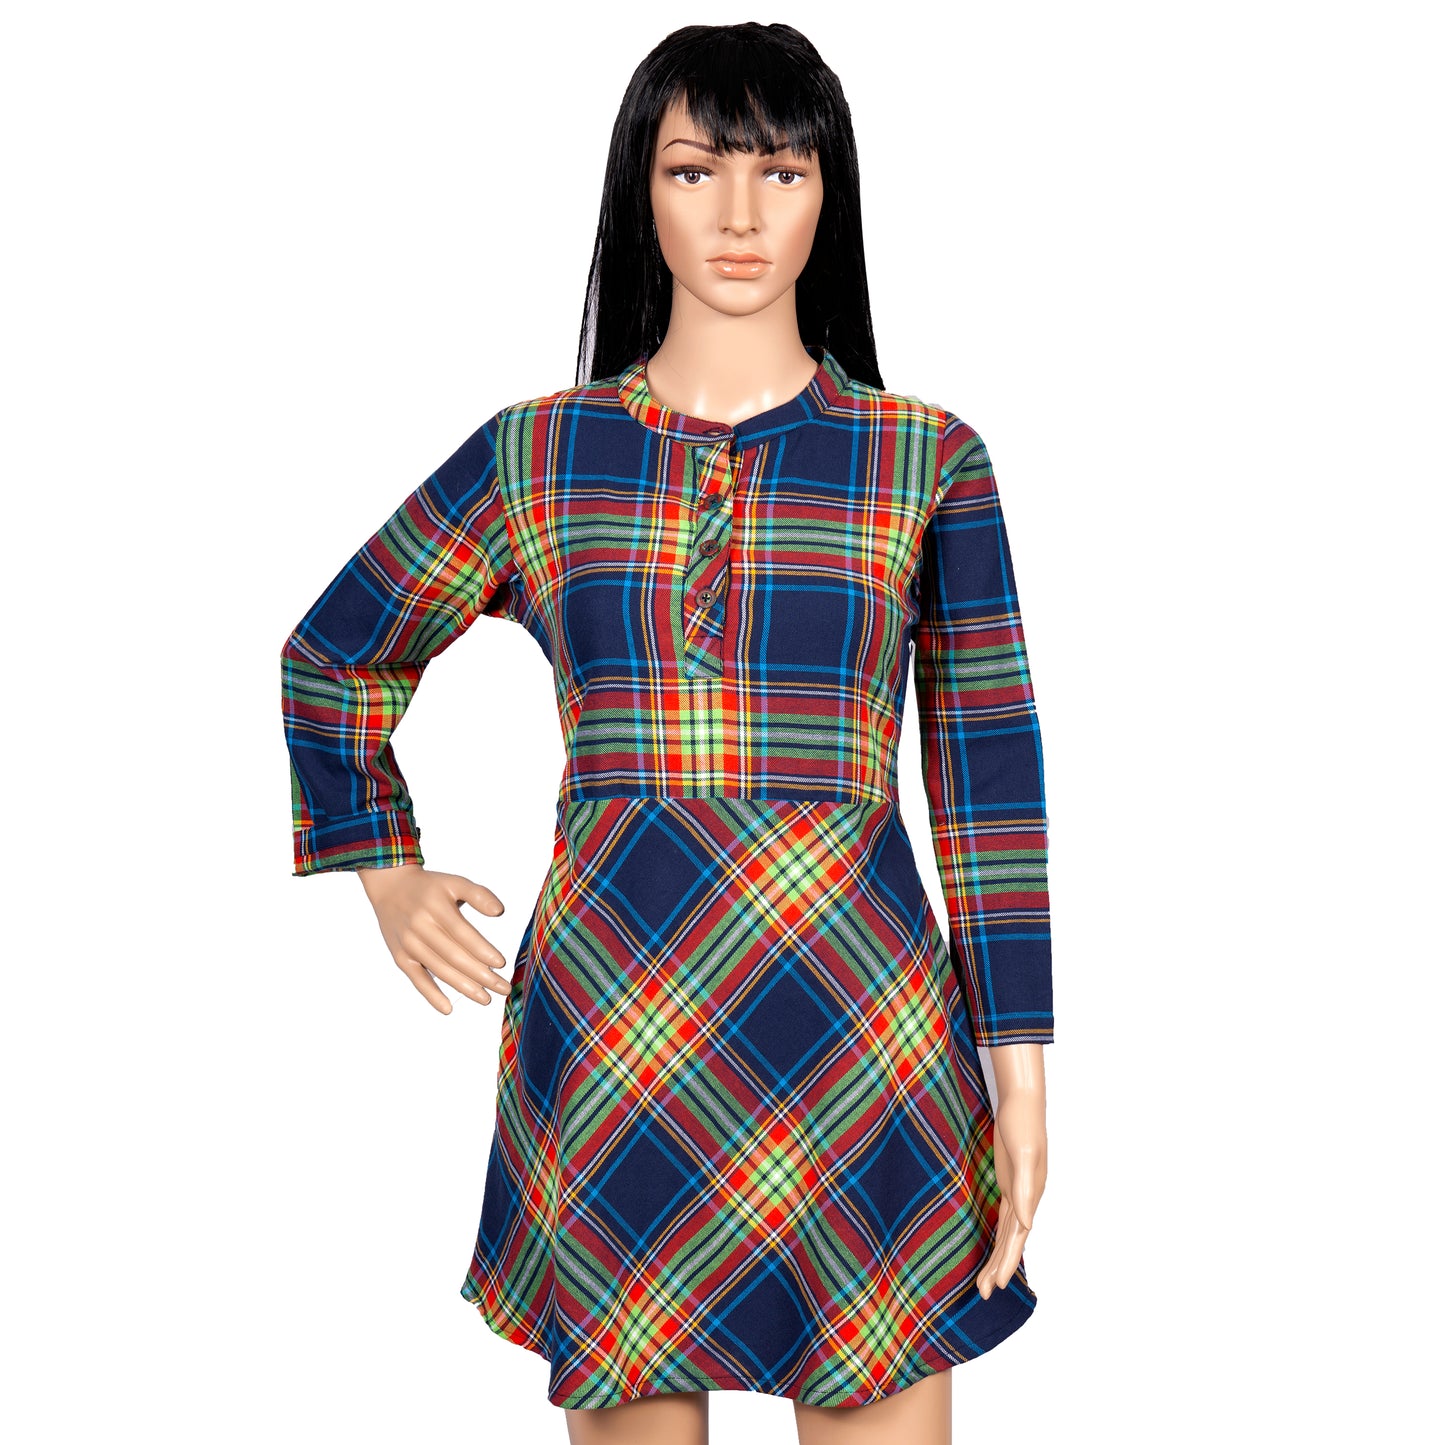 Vibrant Checkered Knee-Length Dress